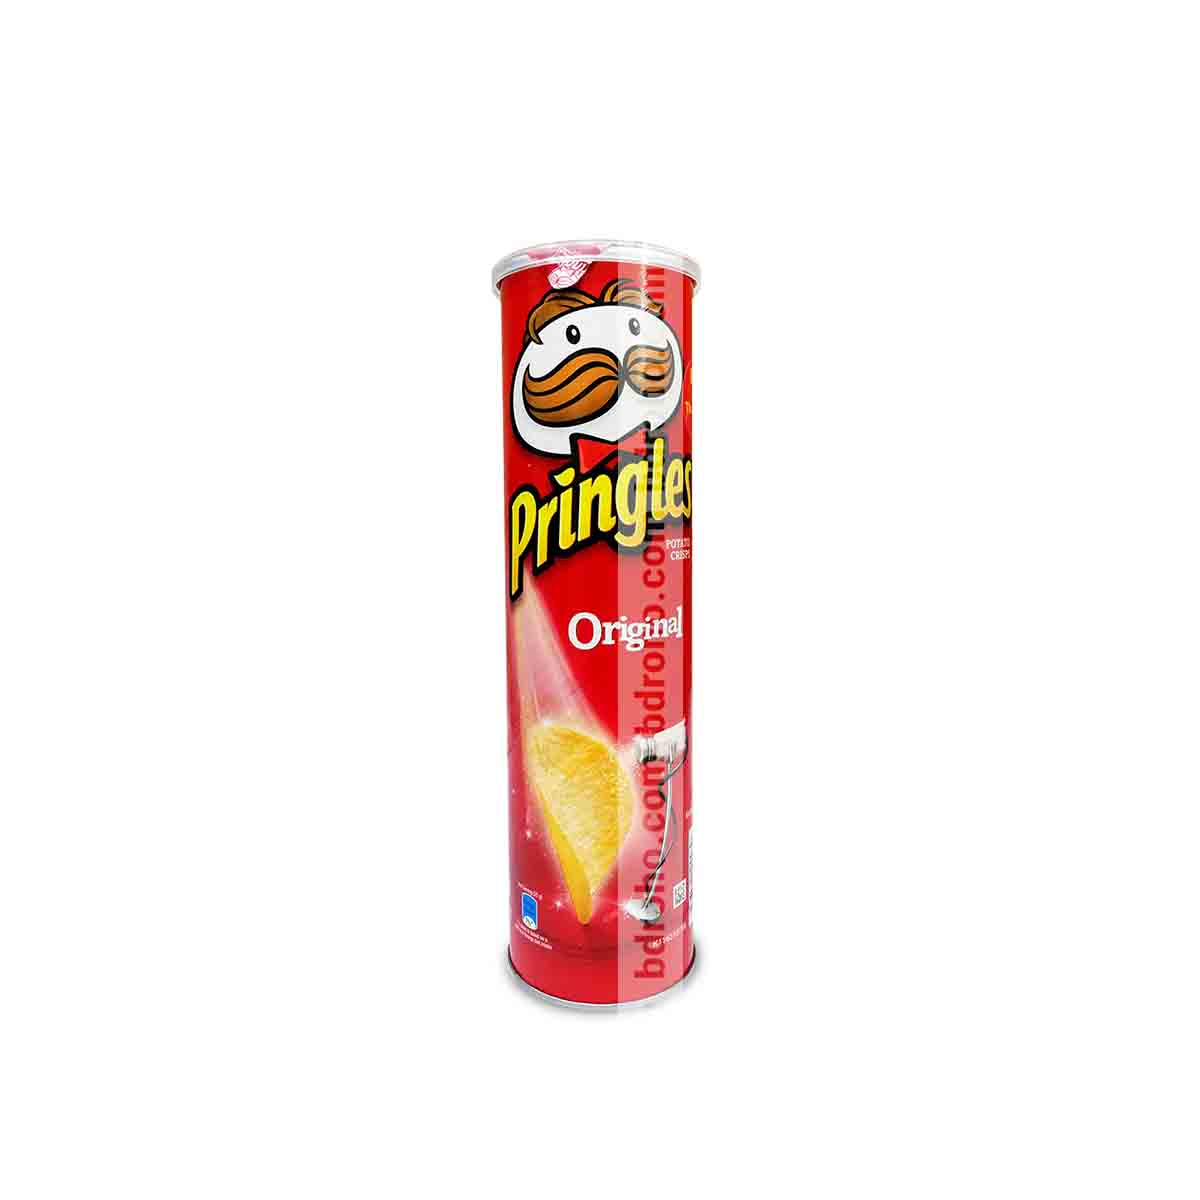 Pringles Original 147g | b|droho